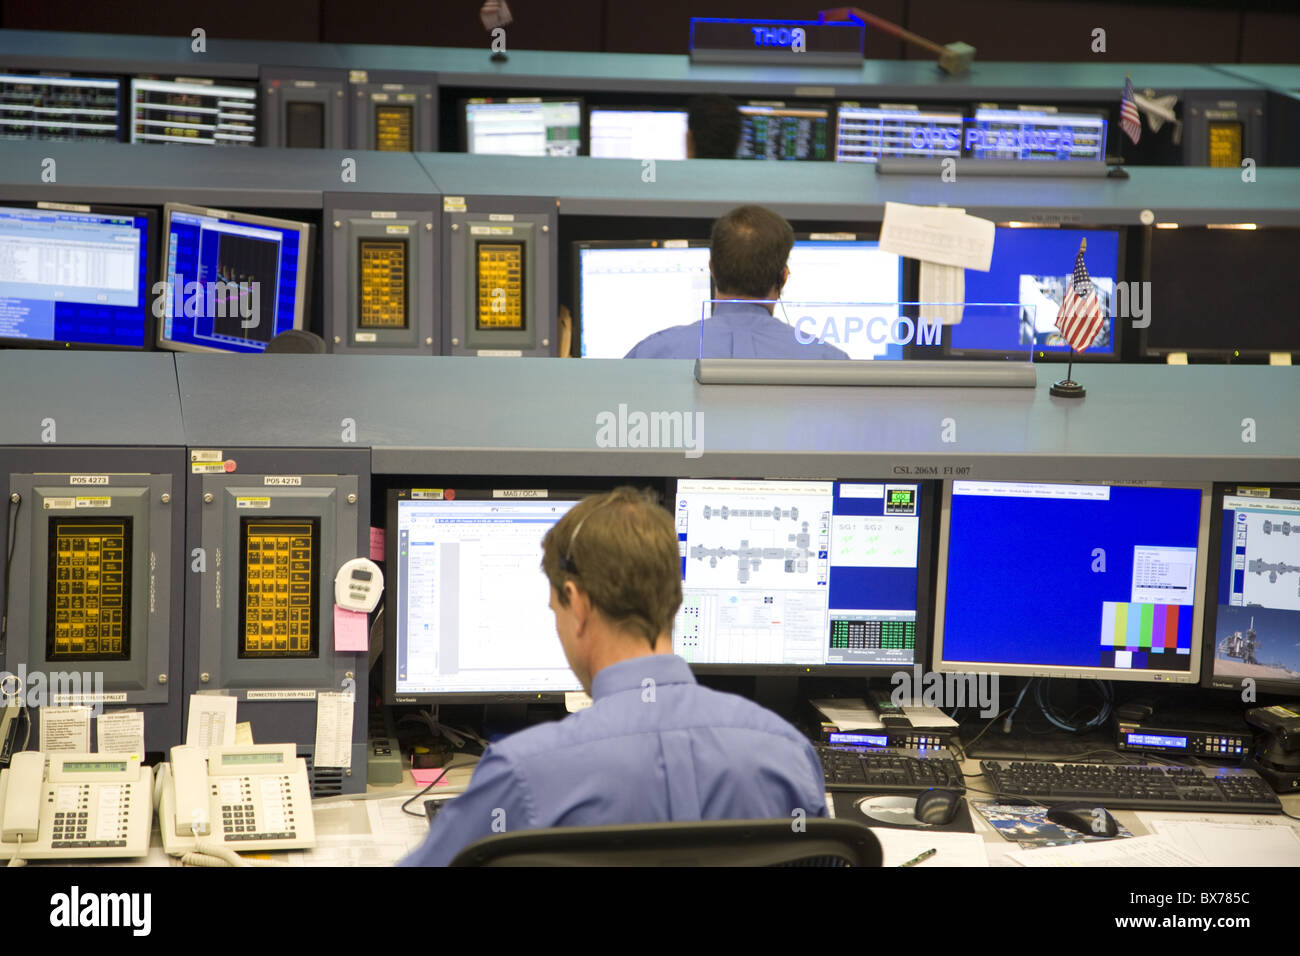 Mission Control Zimmer im NASA, Houston, Texas, Vereinigte Staaten von Amerika, Nordamerika Stockfoto